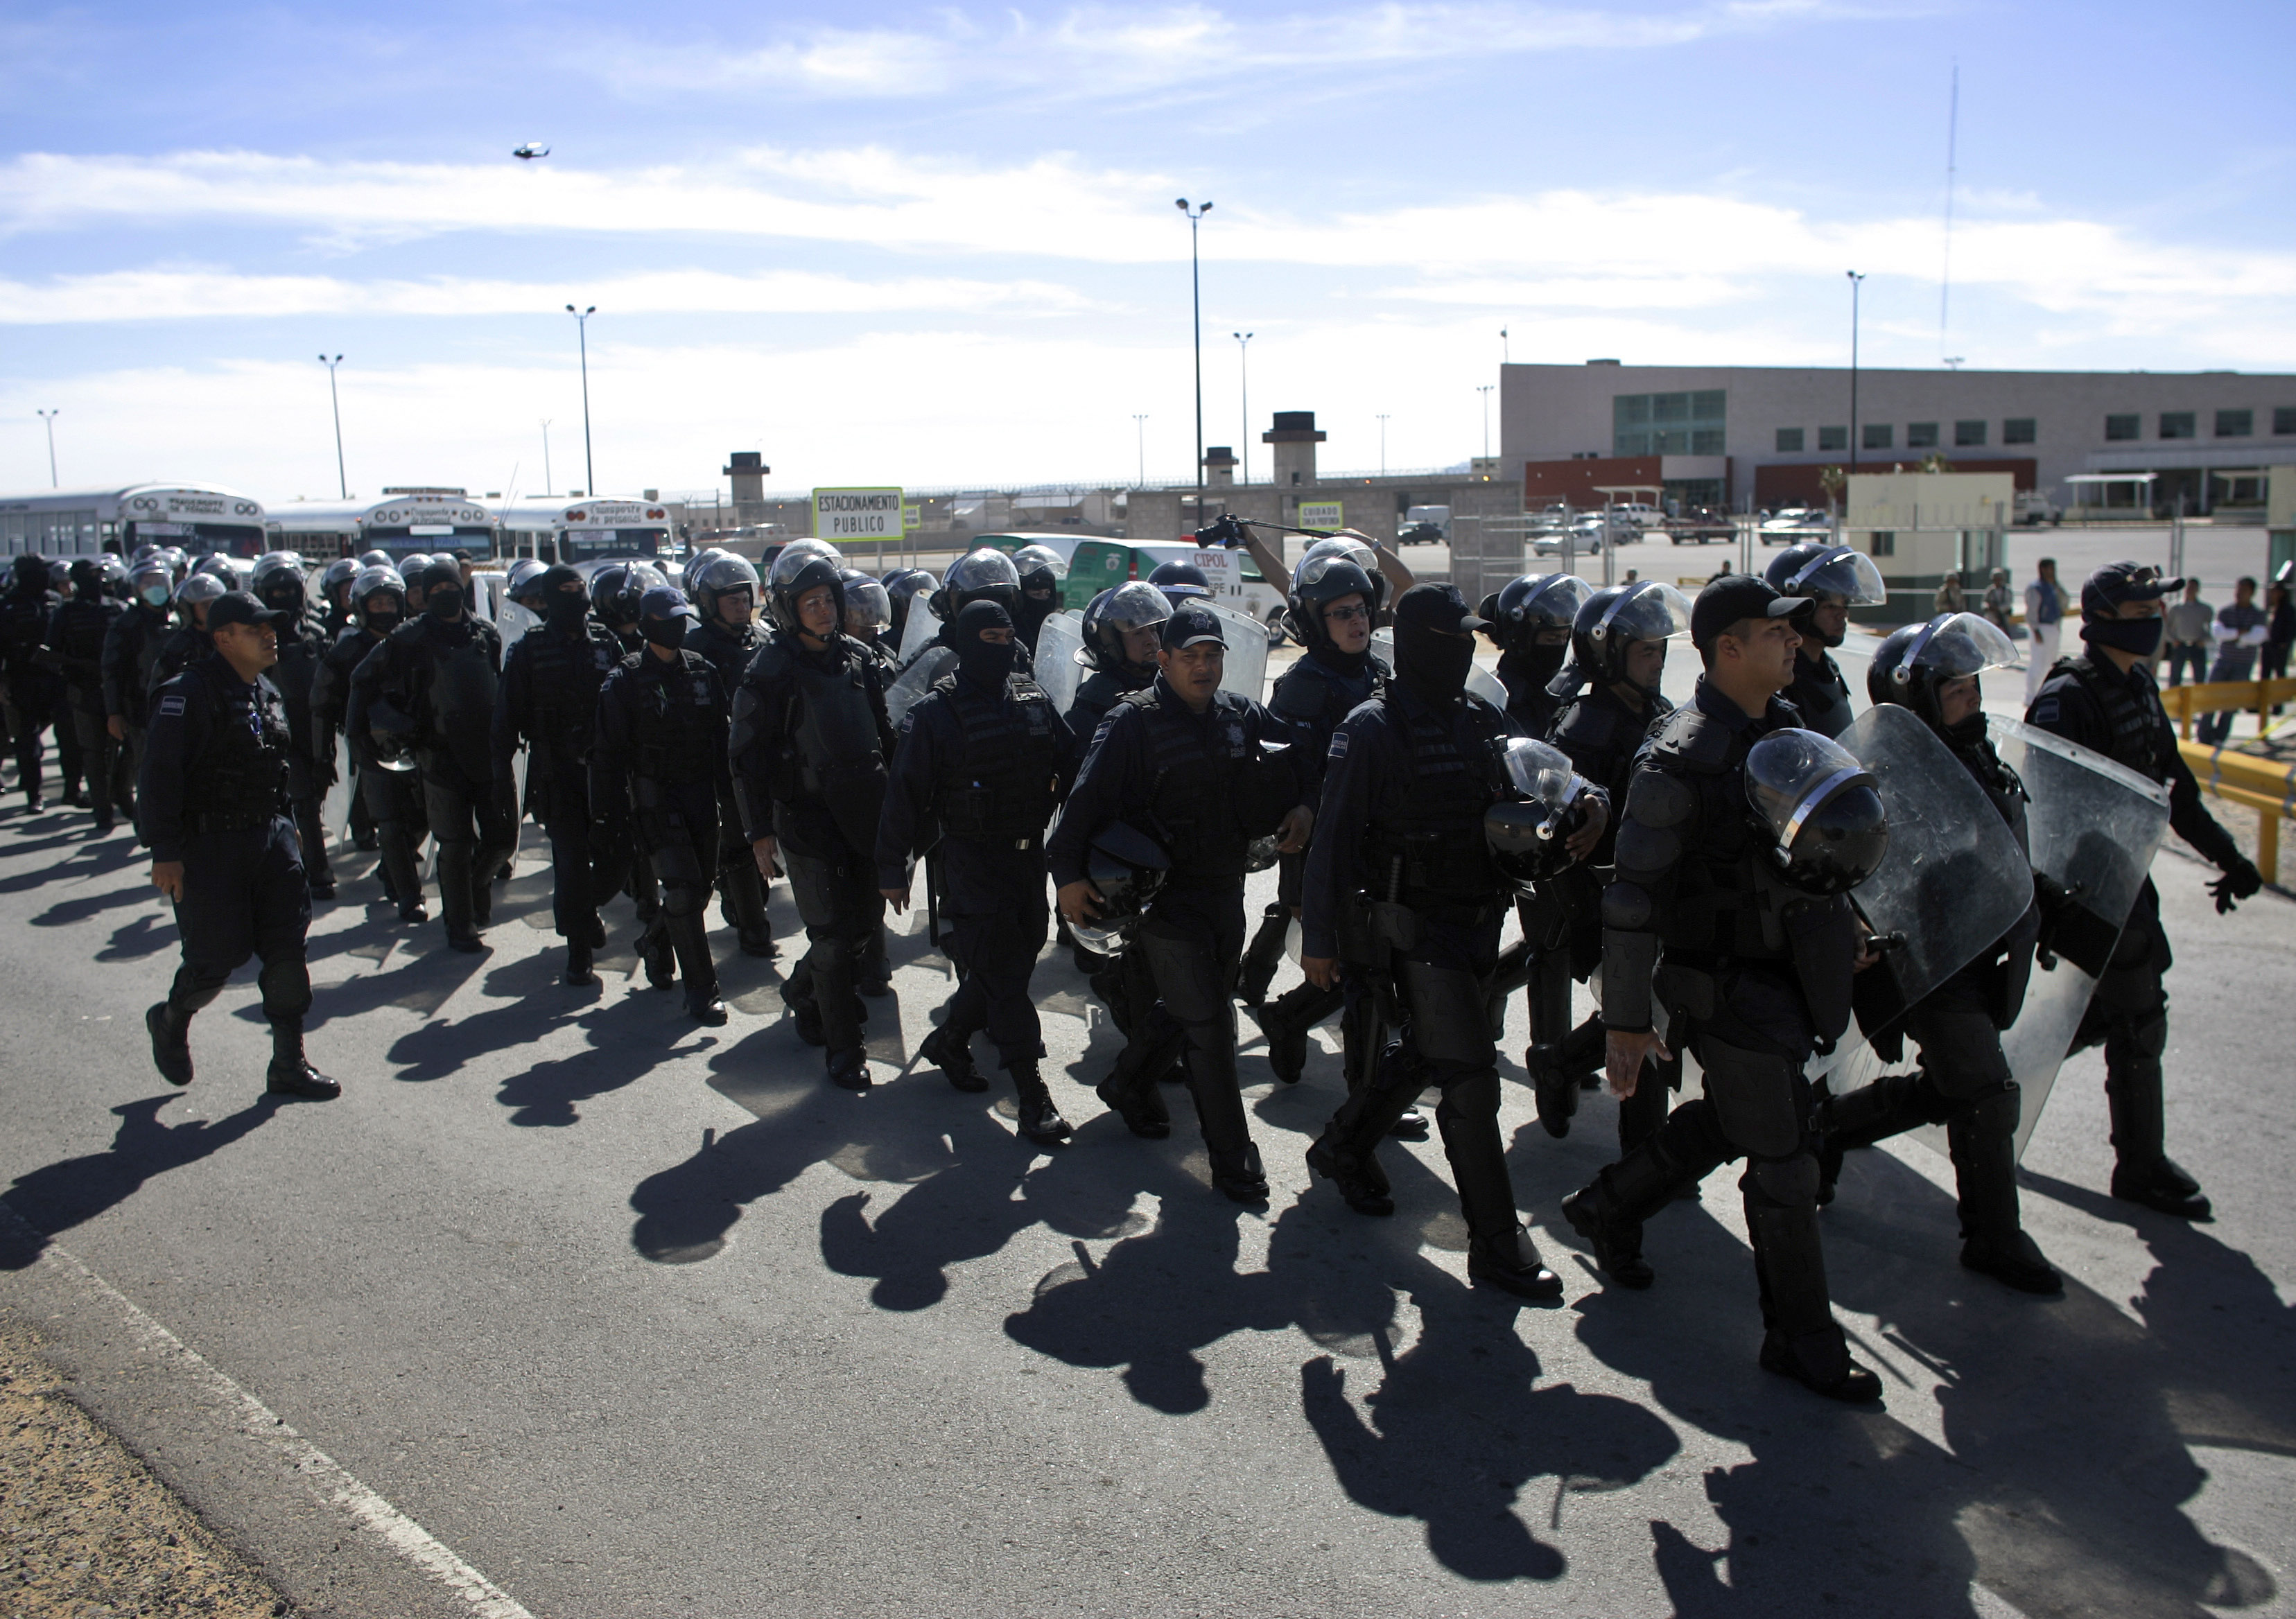 Oroligheter på mexikanska fängelser har blivit allt vanligare. Här marscherar kravallutrustad polis mot en anstalt i Juarez 2009.